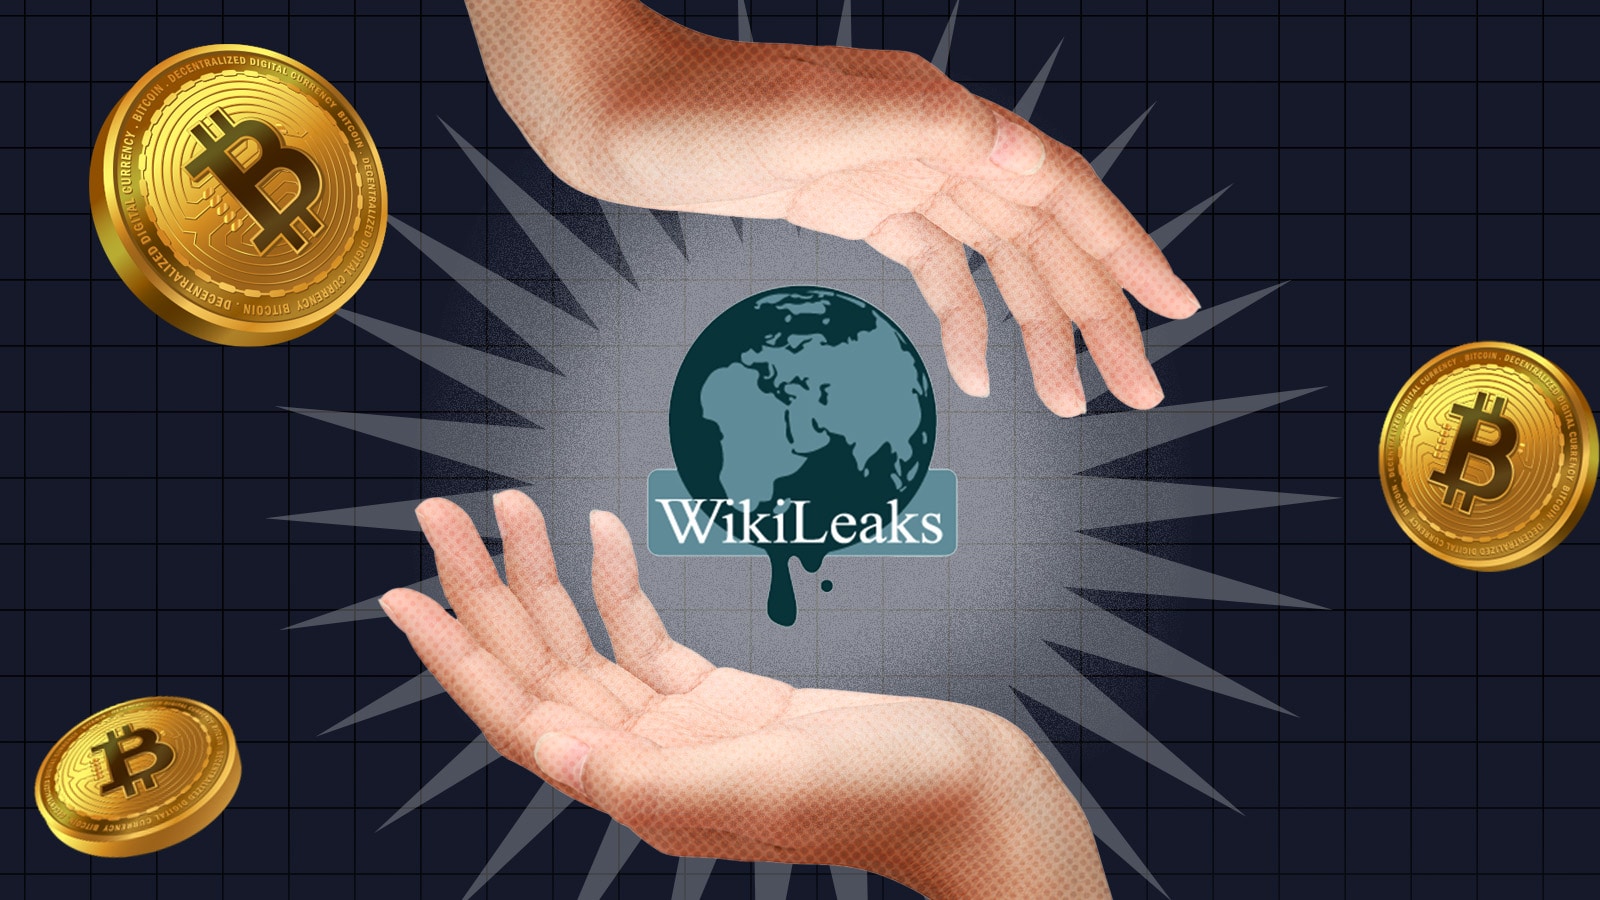 Wikileaks and Bitcoin